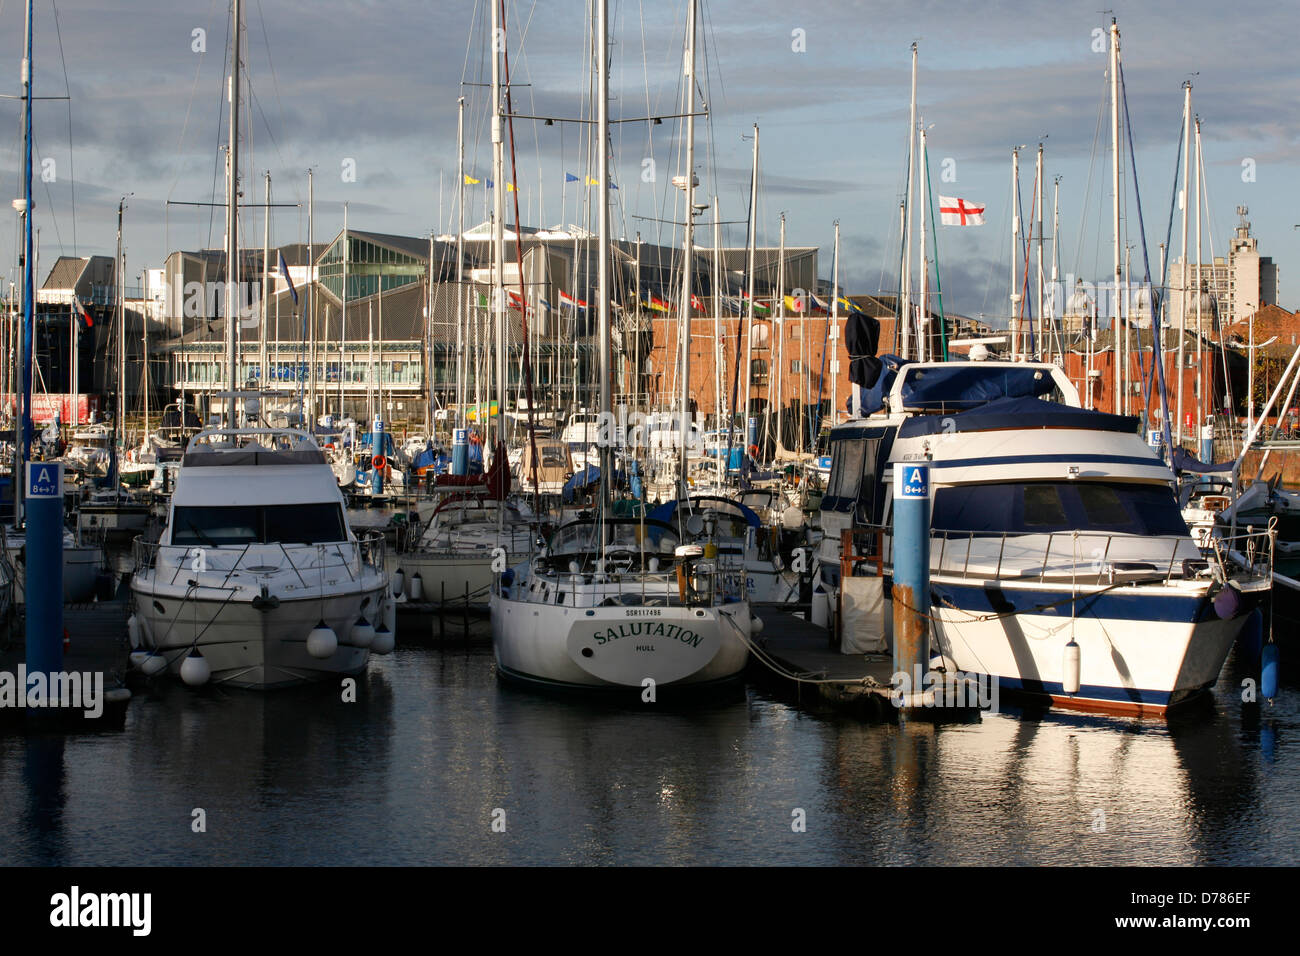 Marina de Hull est une marina pour les bateaux de plaisance situé dans la ville de Kingston Upon Hull. Banque D'Images